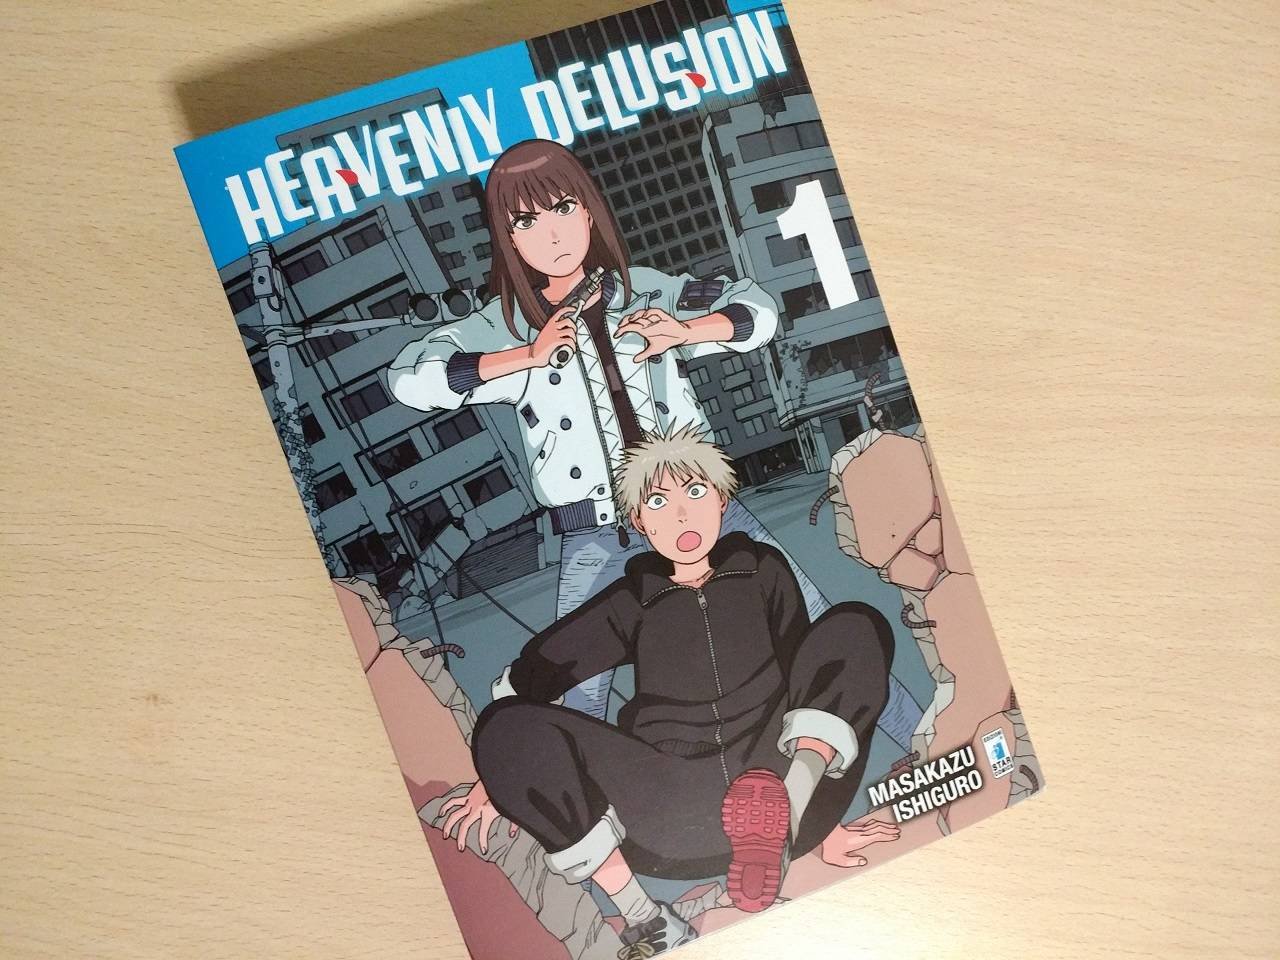 Immagine di Heavenly Delusion, la recensione del primo volume del manga di Masakazu Ishiguro